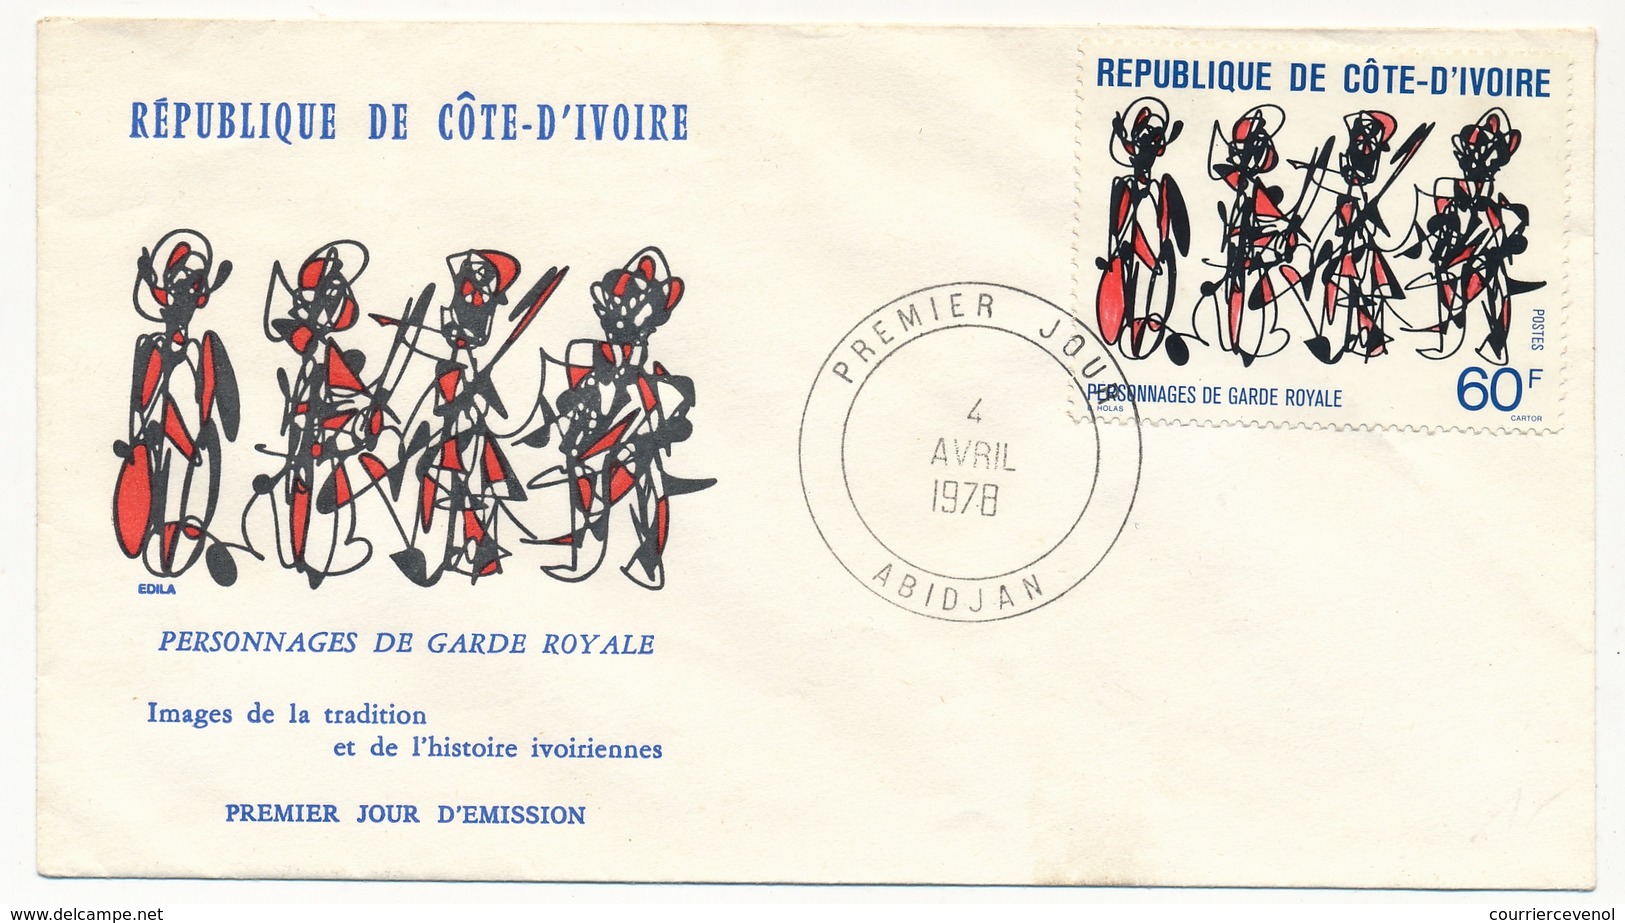 Côte D'Ivoire => 2 Enveloppes FDC - Personnages De Garde Royale - Abidjan - 4 Avril 1978 - Côte D'Ivoire (1960-...)